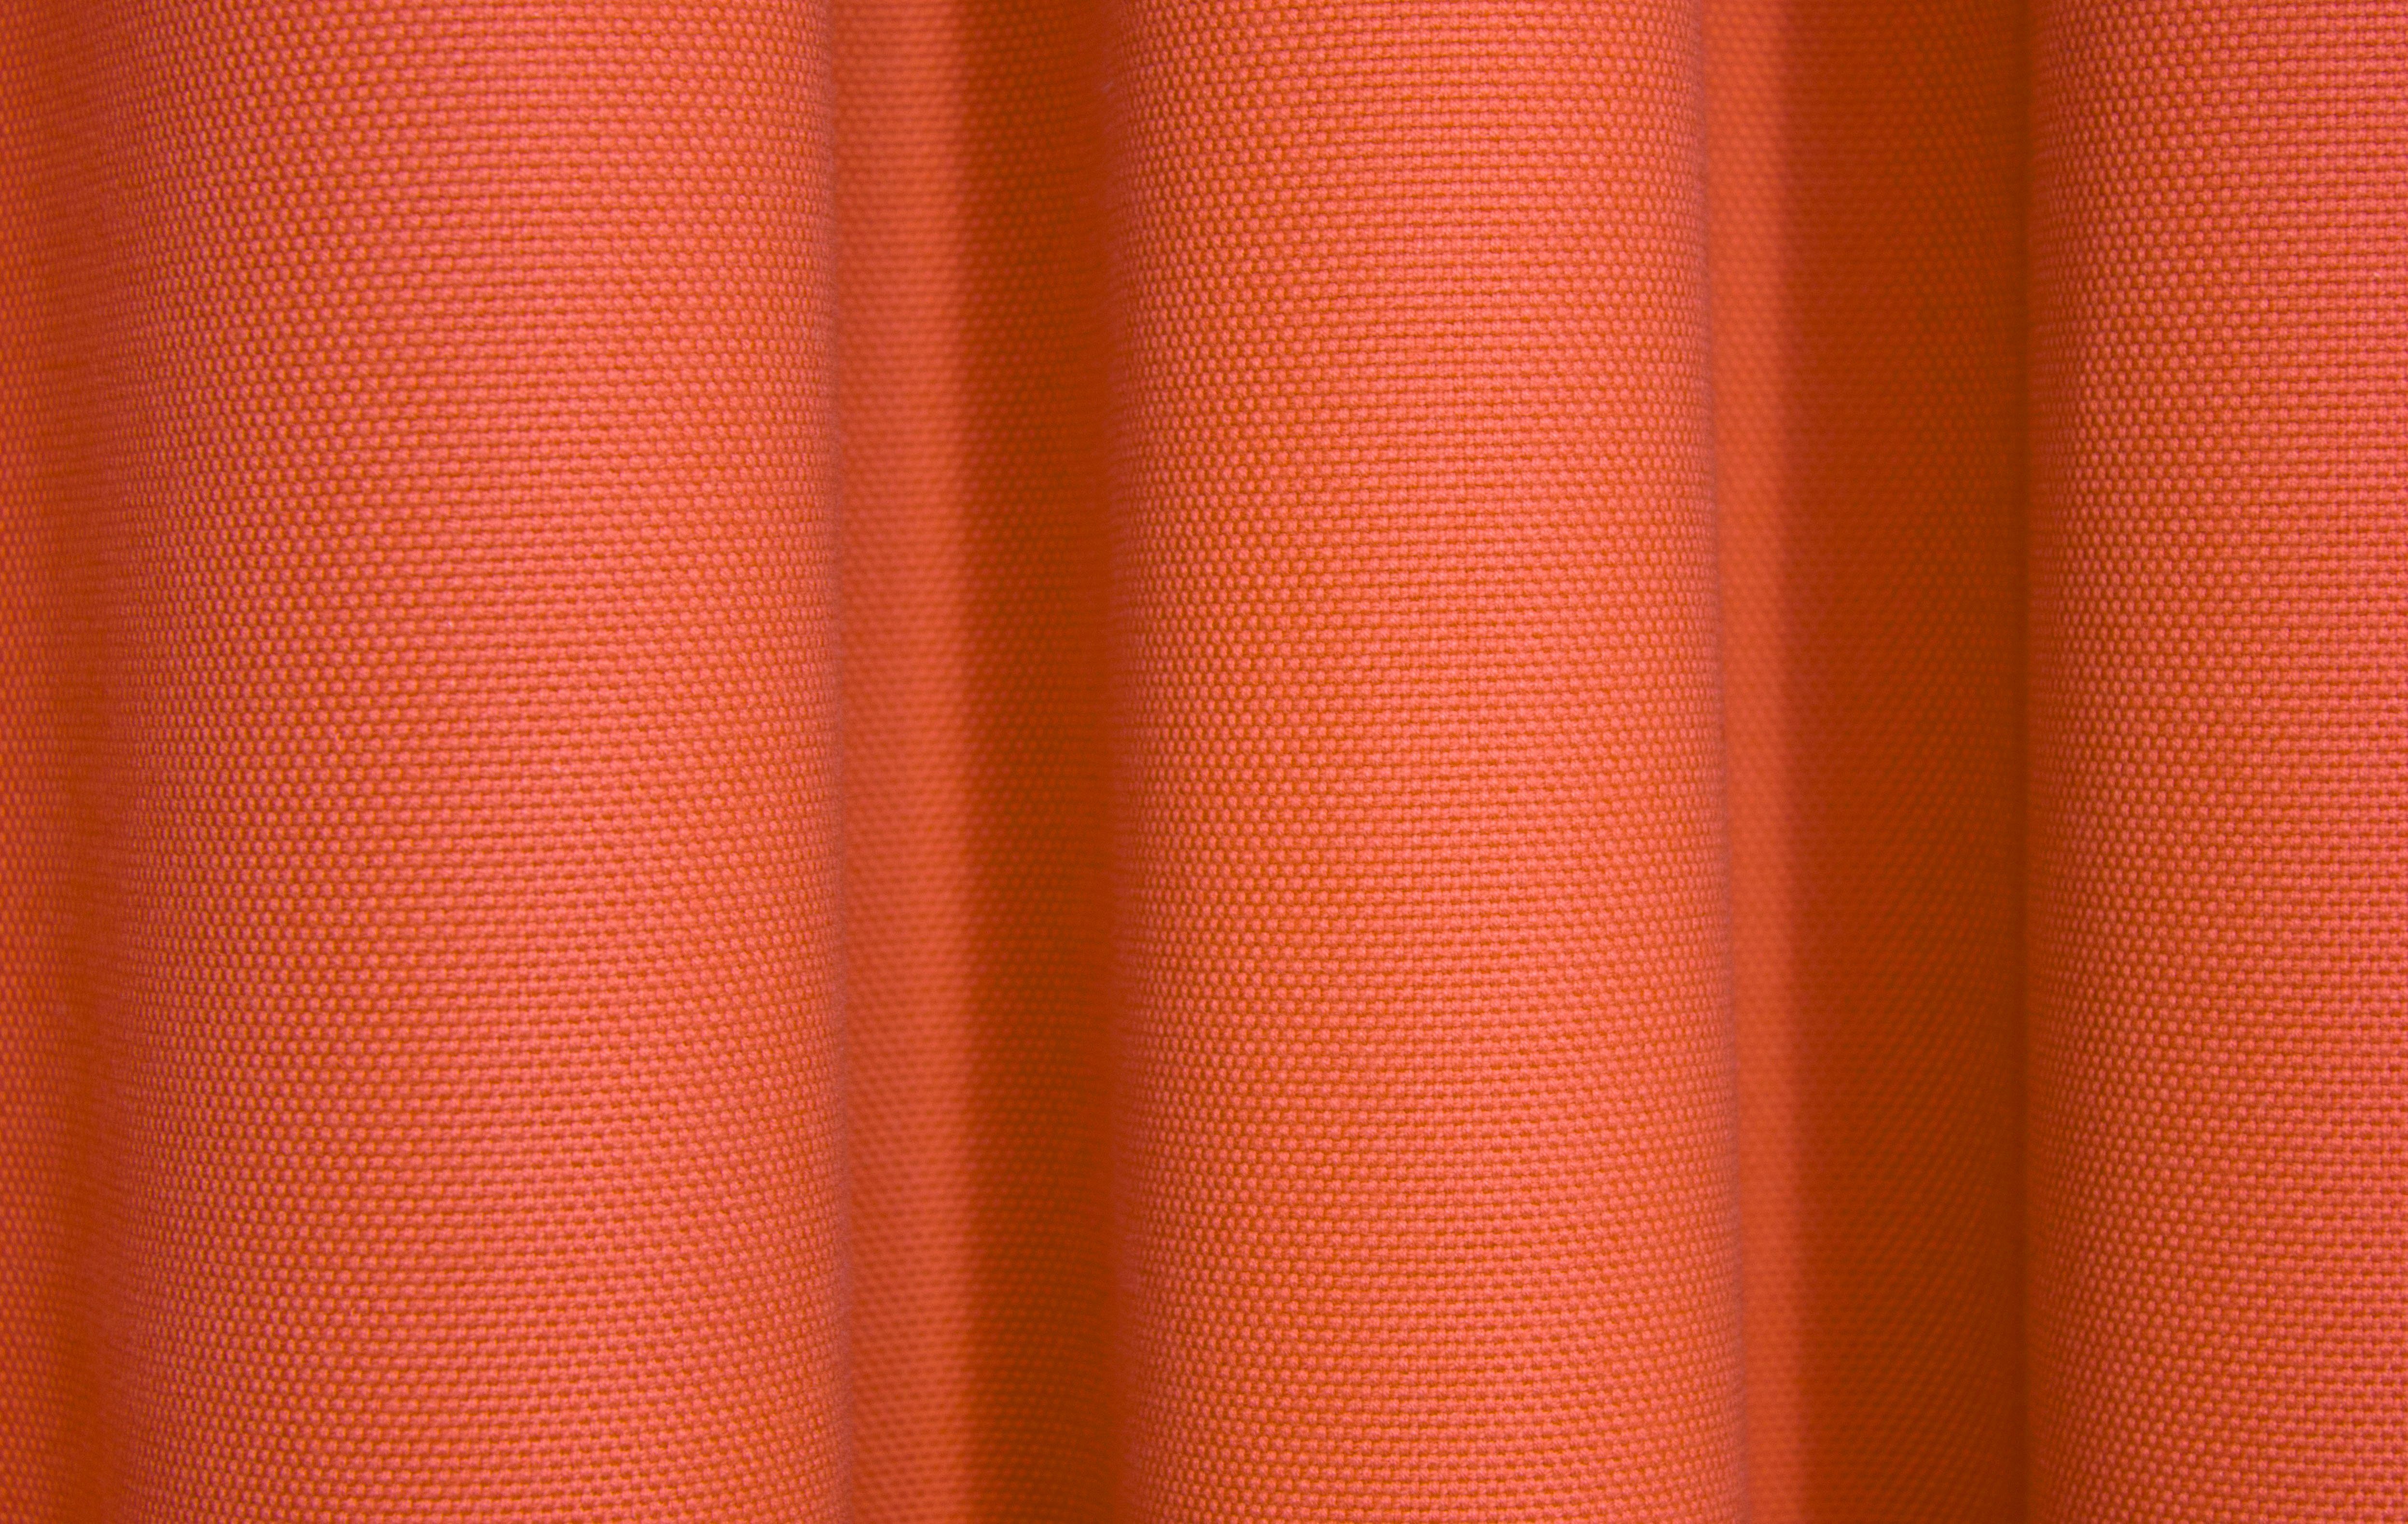 WirthNatur, nach blickdicht, Wirth, St), Vorhang rot (1 Maß Kräuselband